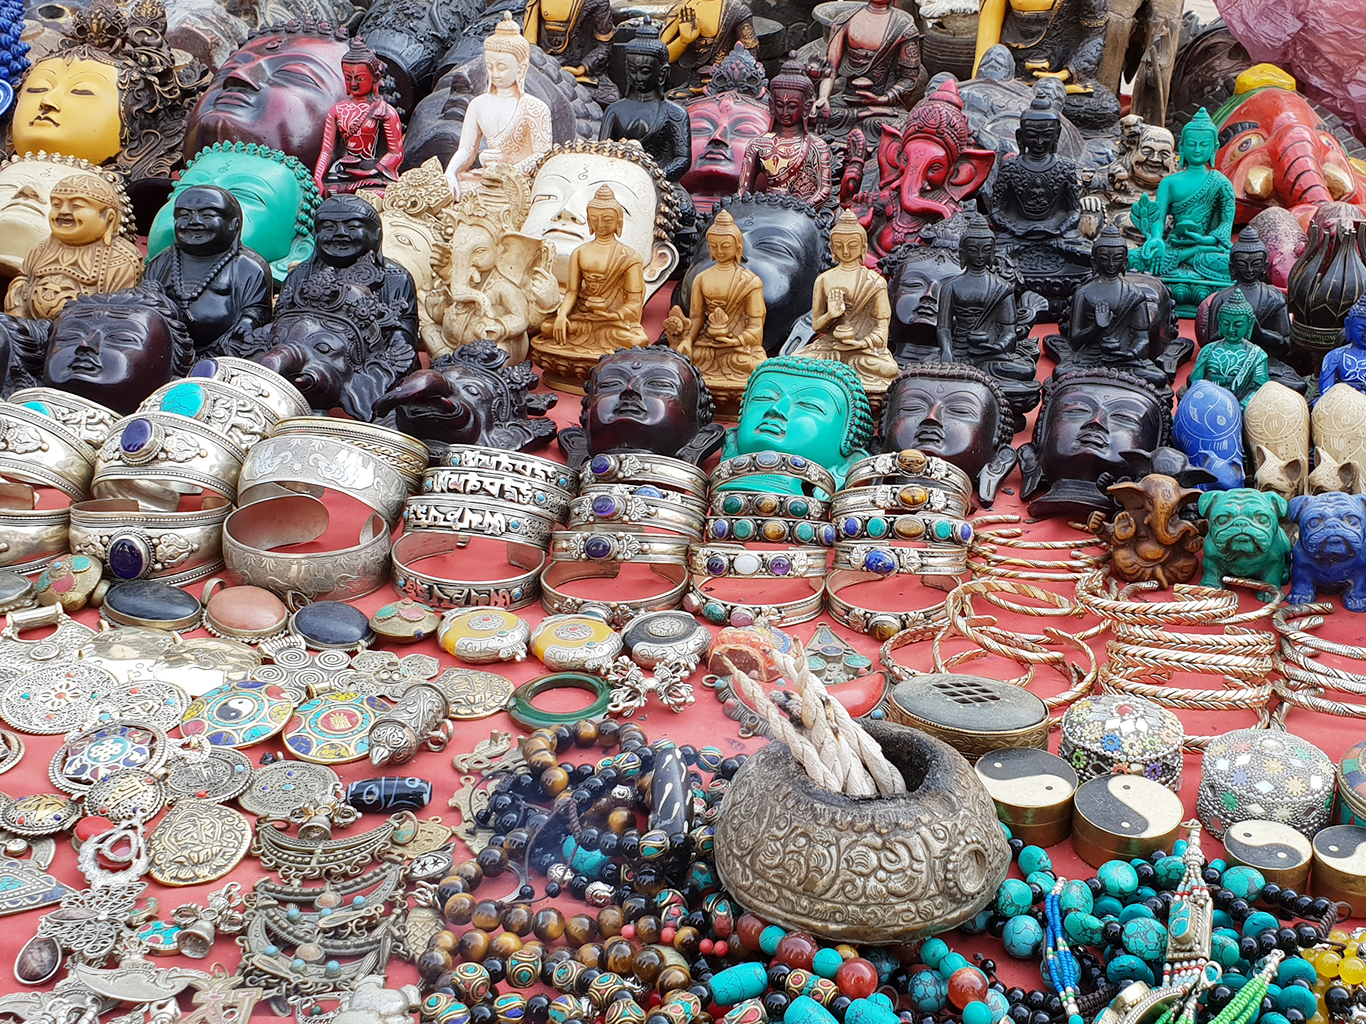 Nejčastějšími nepálskými suvenýry jsou různé náramky, korálky a sošky Buddhy